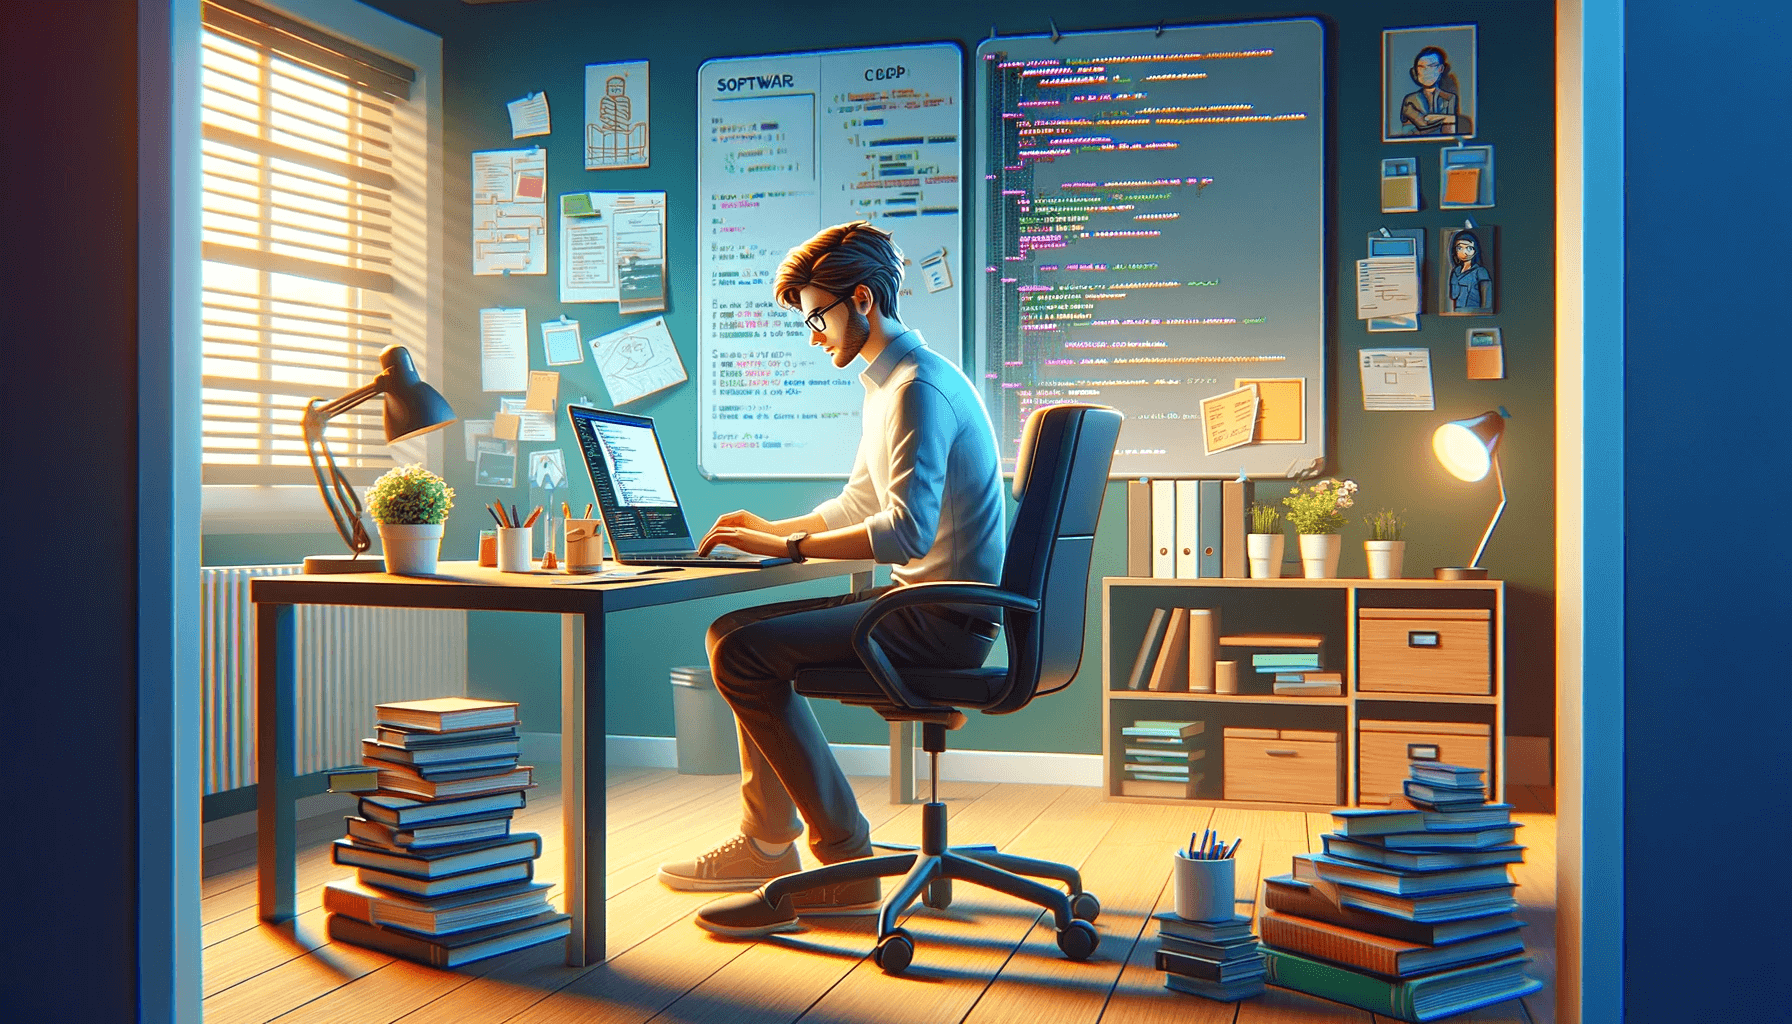 Developer at Desk